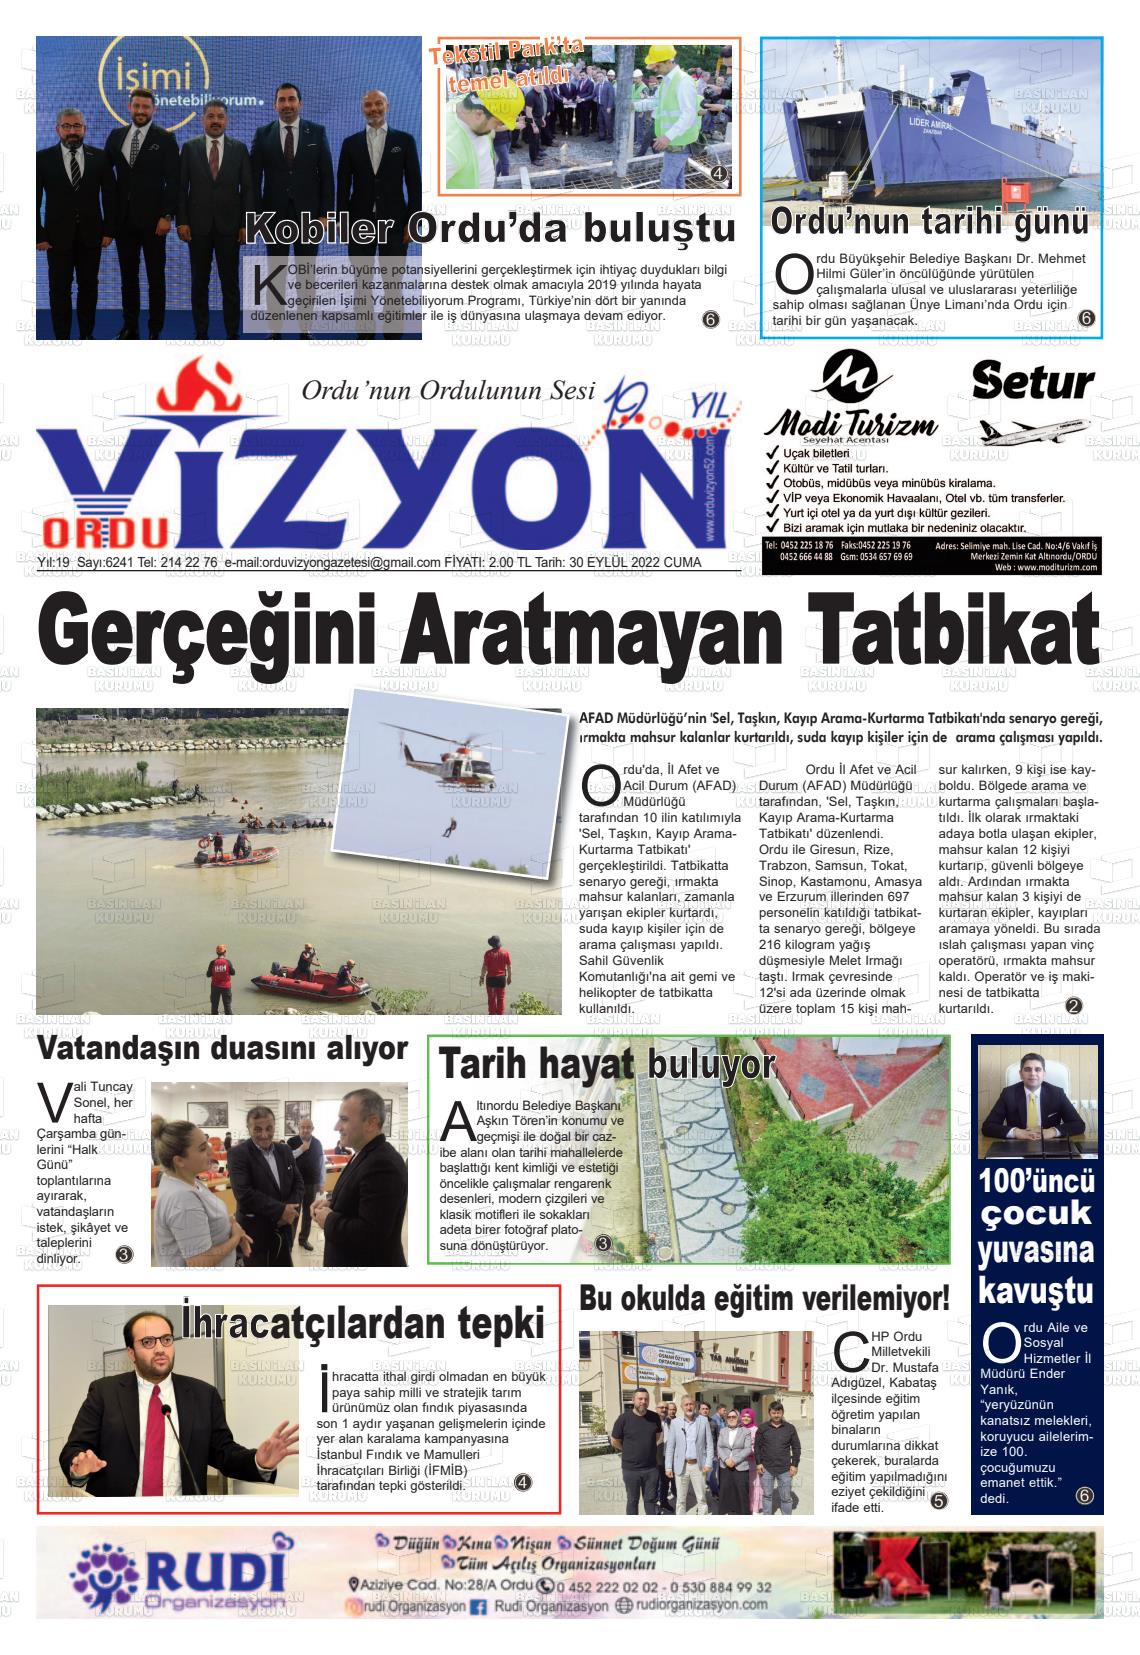 30 Eylül 2022 Ordu Vizyon Gazete Manşeti